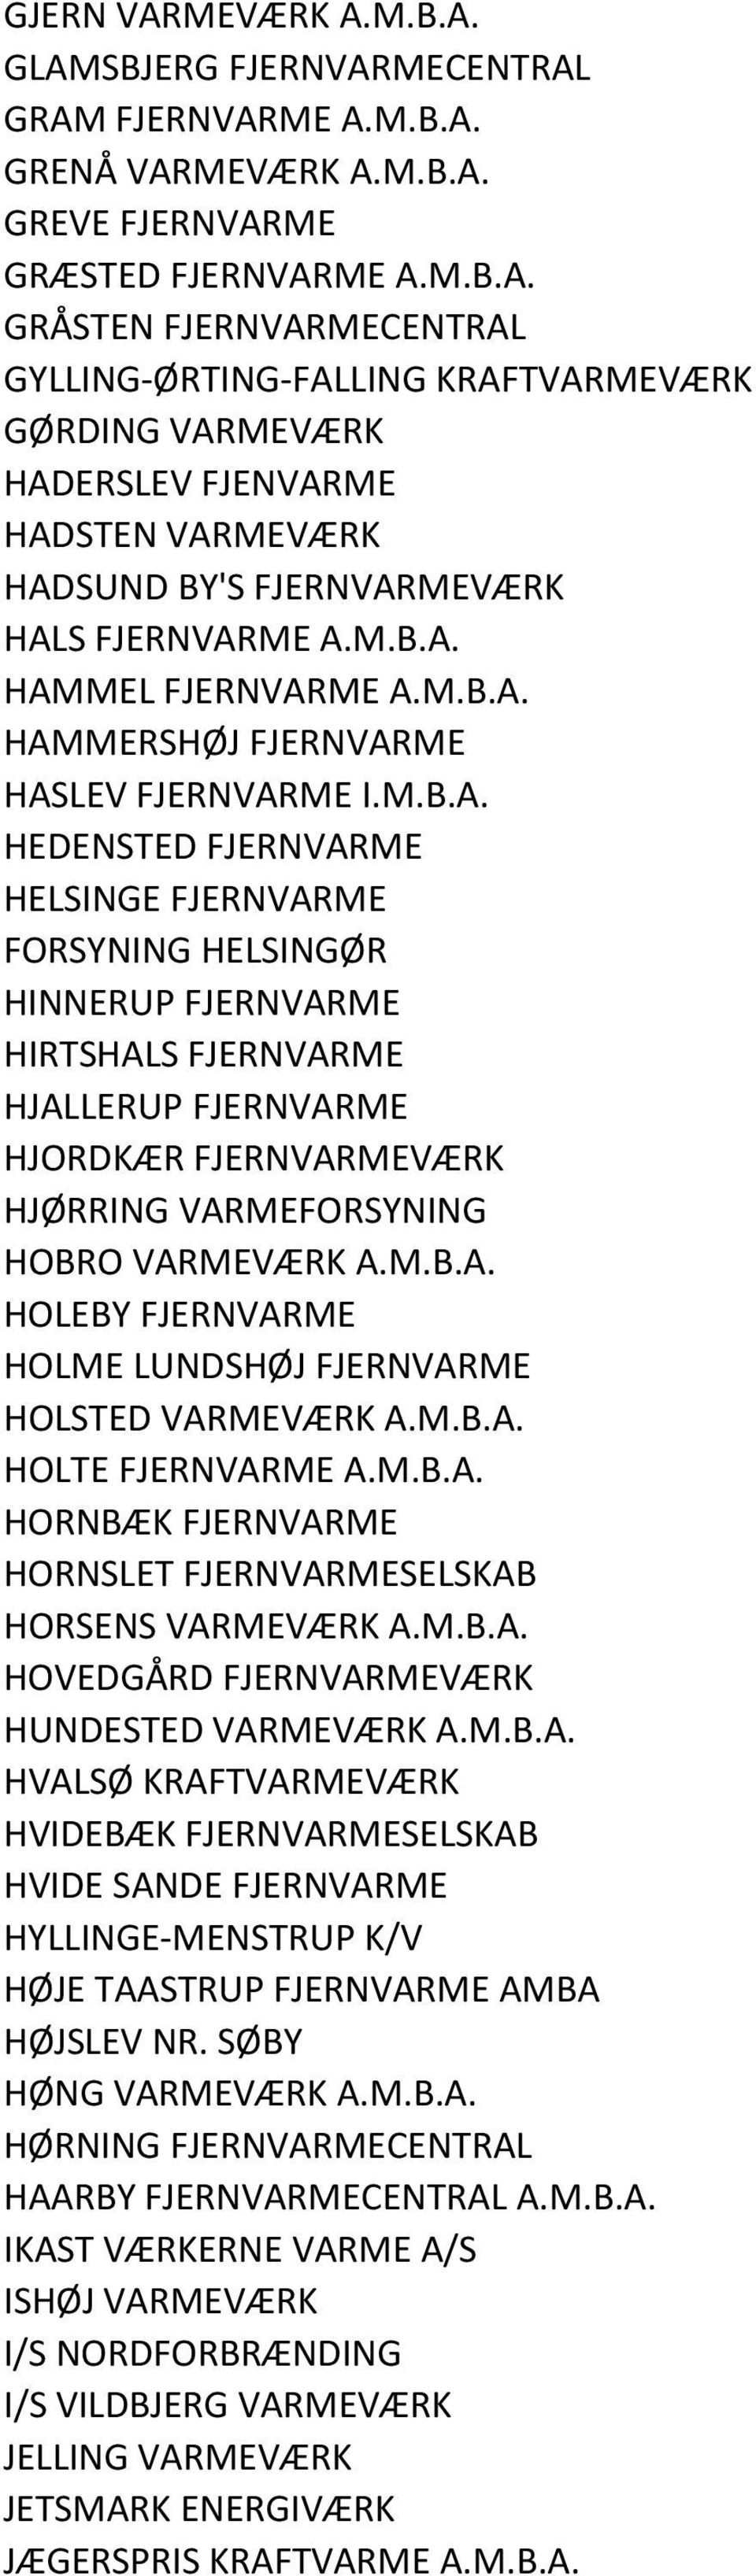 M.B.A. HOLEBY FJERNVARME HOLME LUNDSHØJ FJERNVARME HOLSTED VARMEVÆRK A.M.B.A. HOLTE FJERNVARME A.M.B.A. HORNBÆK FJERNVARME HORNSLET FJERNVARMESELSKAB HORSENS VARMEVÆRK A.M.B.A. HOVEDGÅRD FJERNVARMEVÆRK HUNDESTED VARMEVÆRK A.